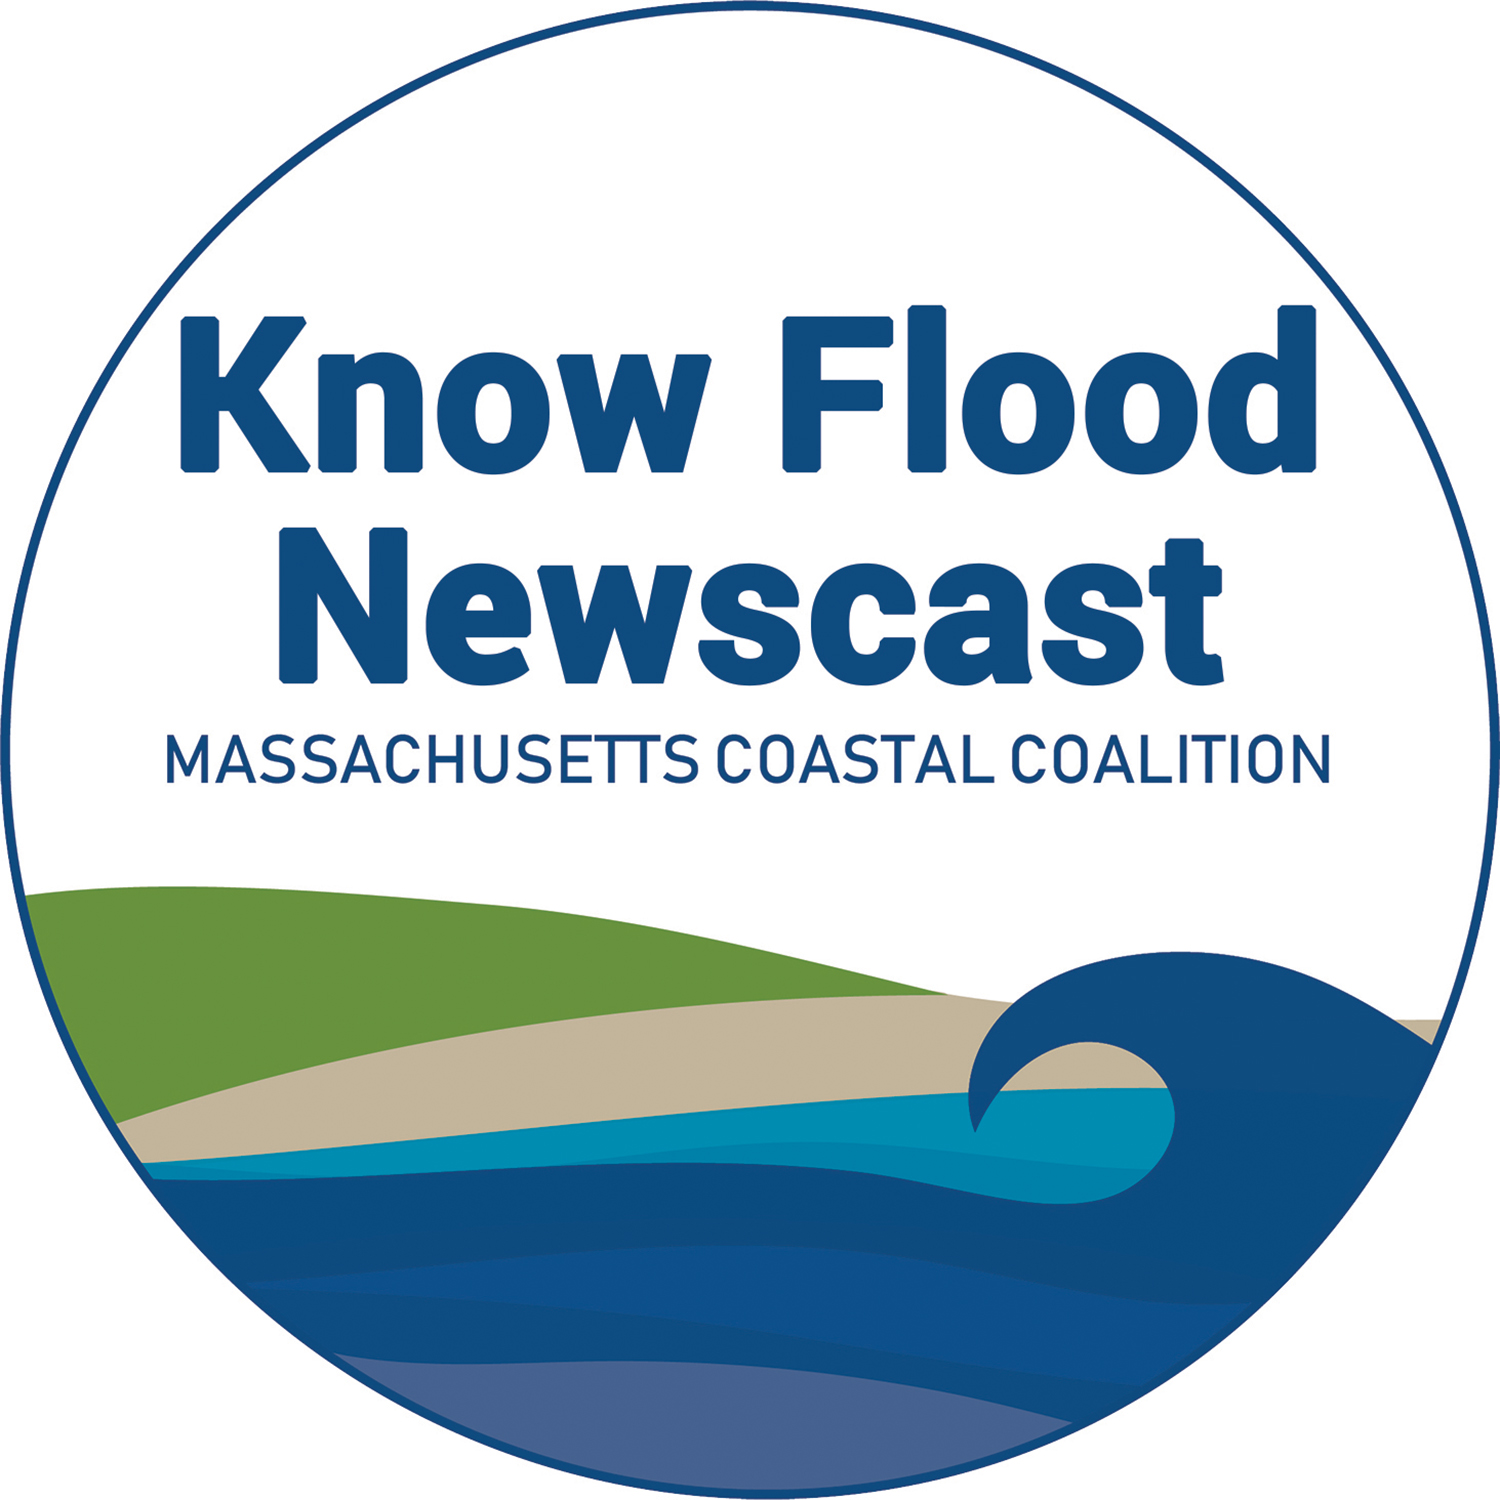 The Know Flood Newscast